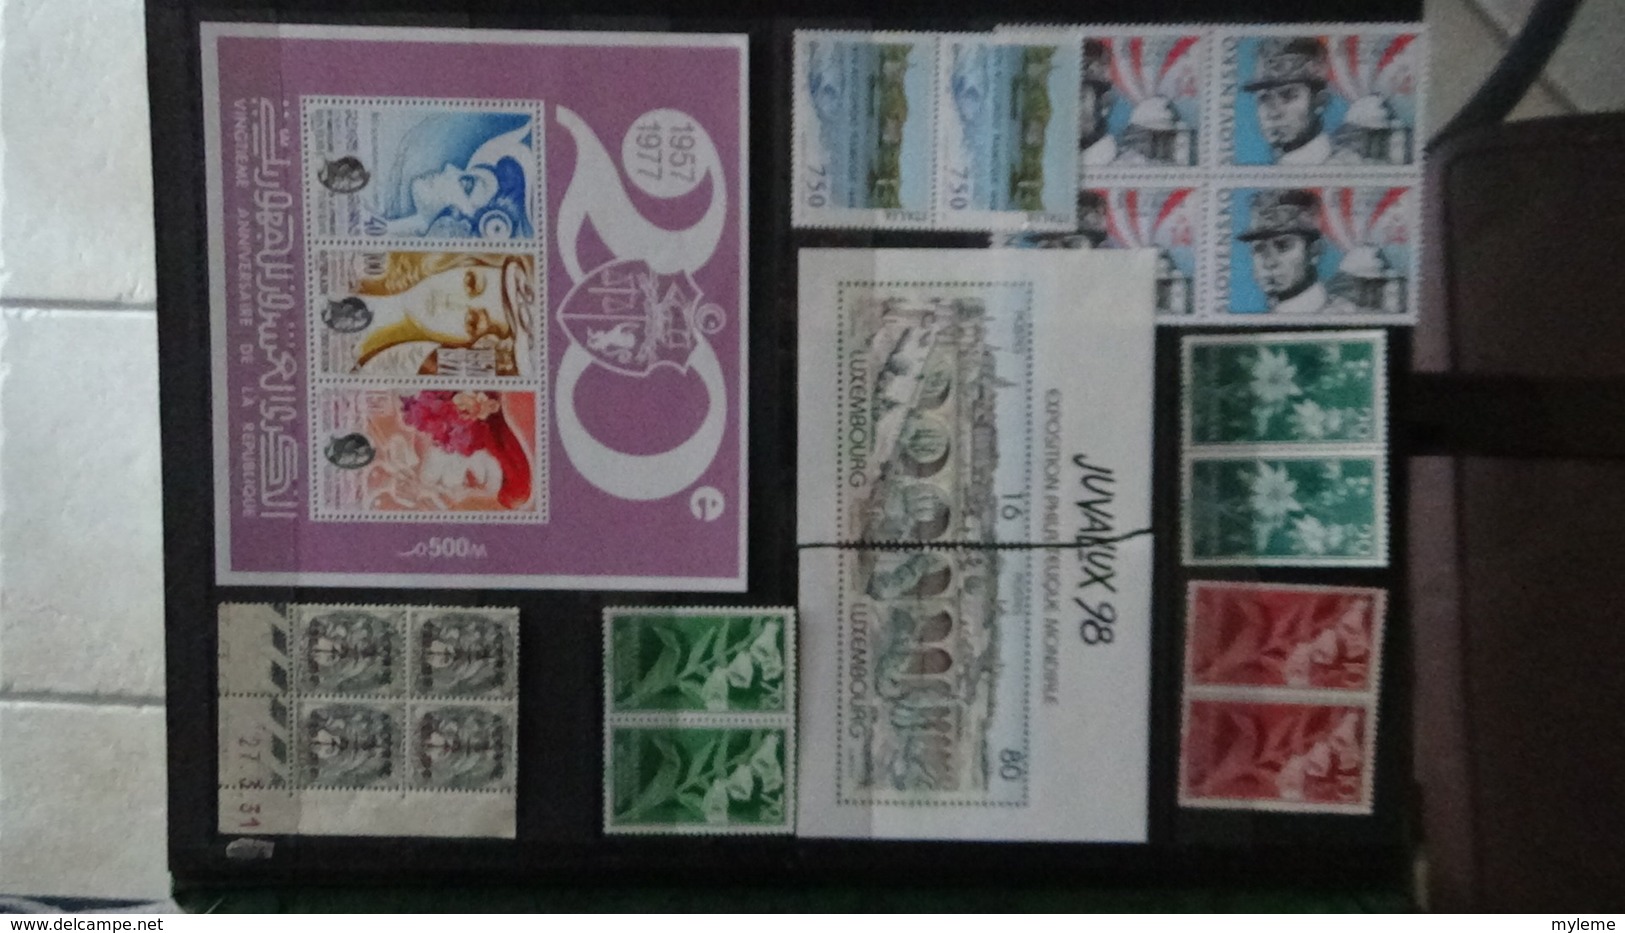 Collection de timbres et blocs ** de tous pays dont quelques blocs de Tunisie. A saisir !!!